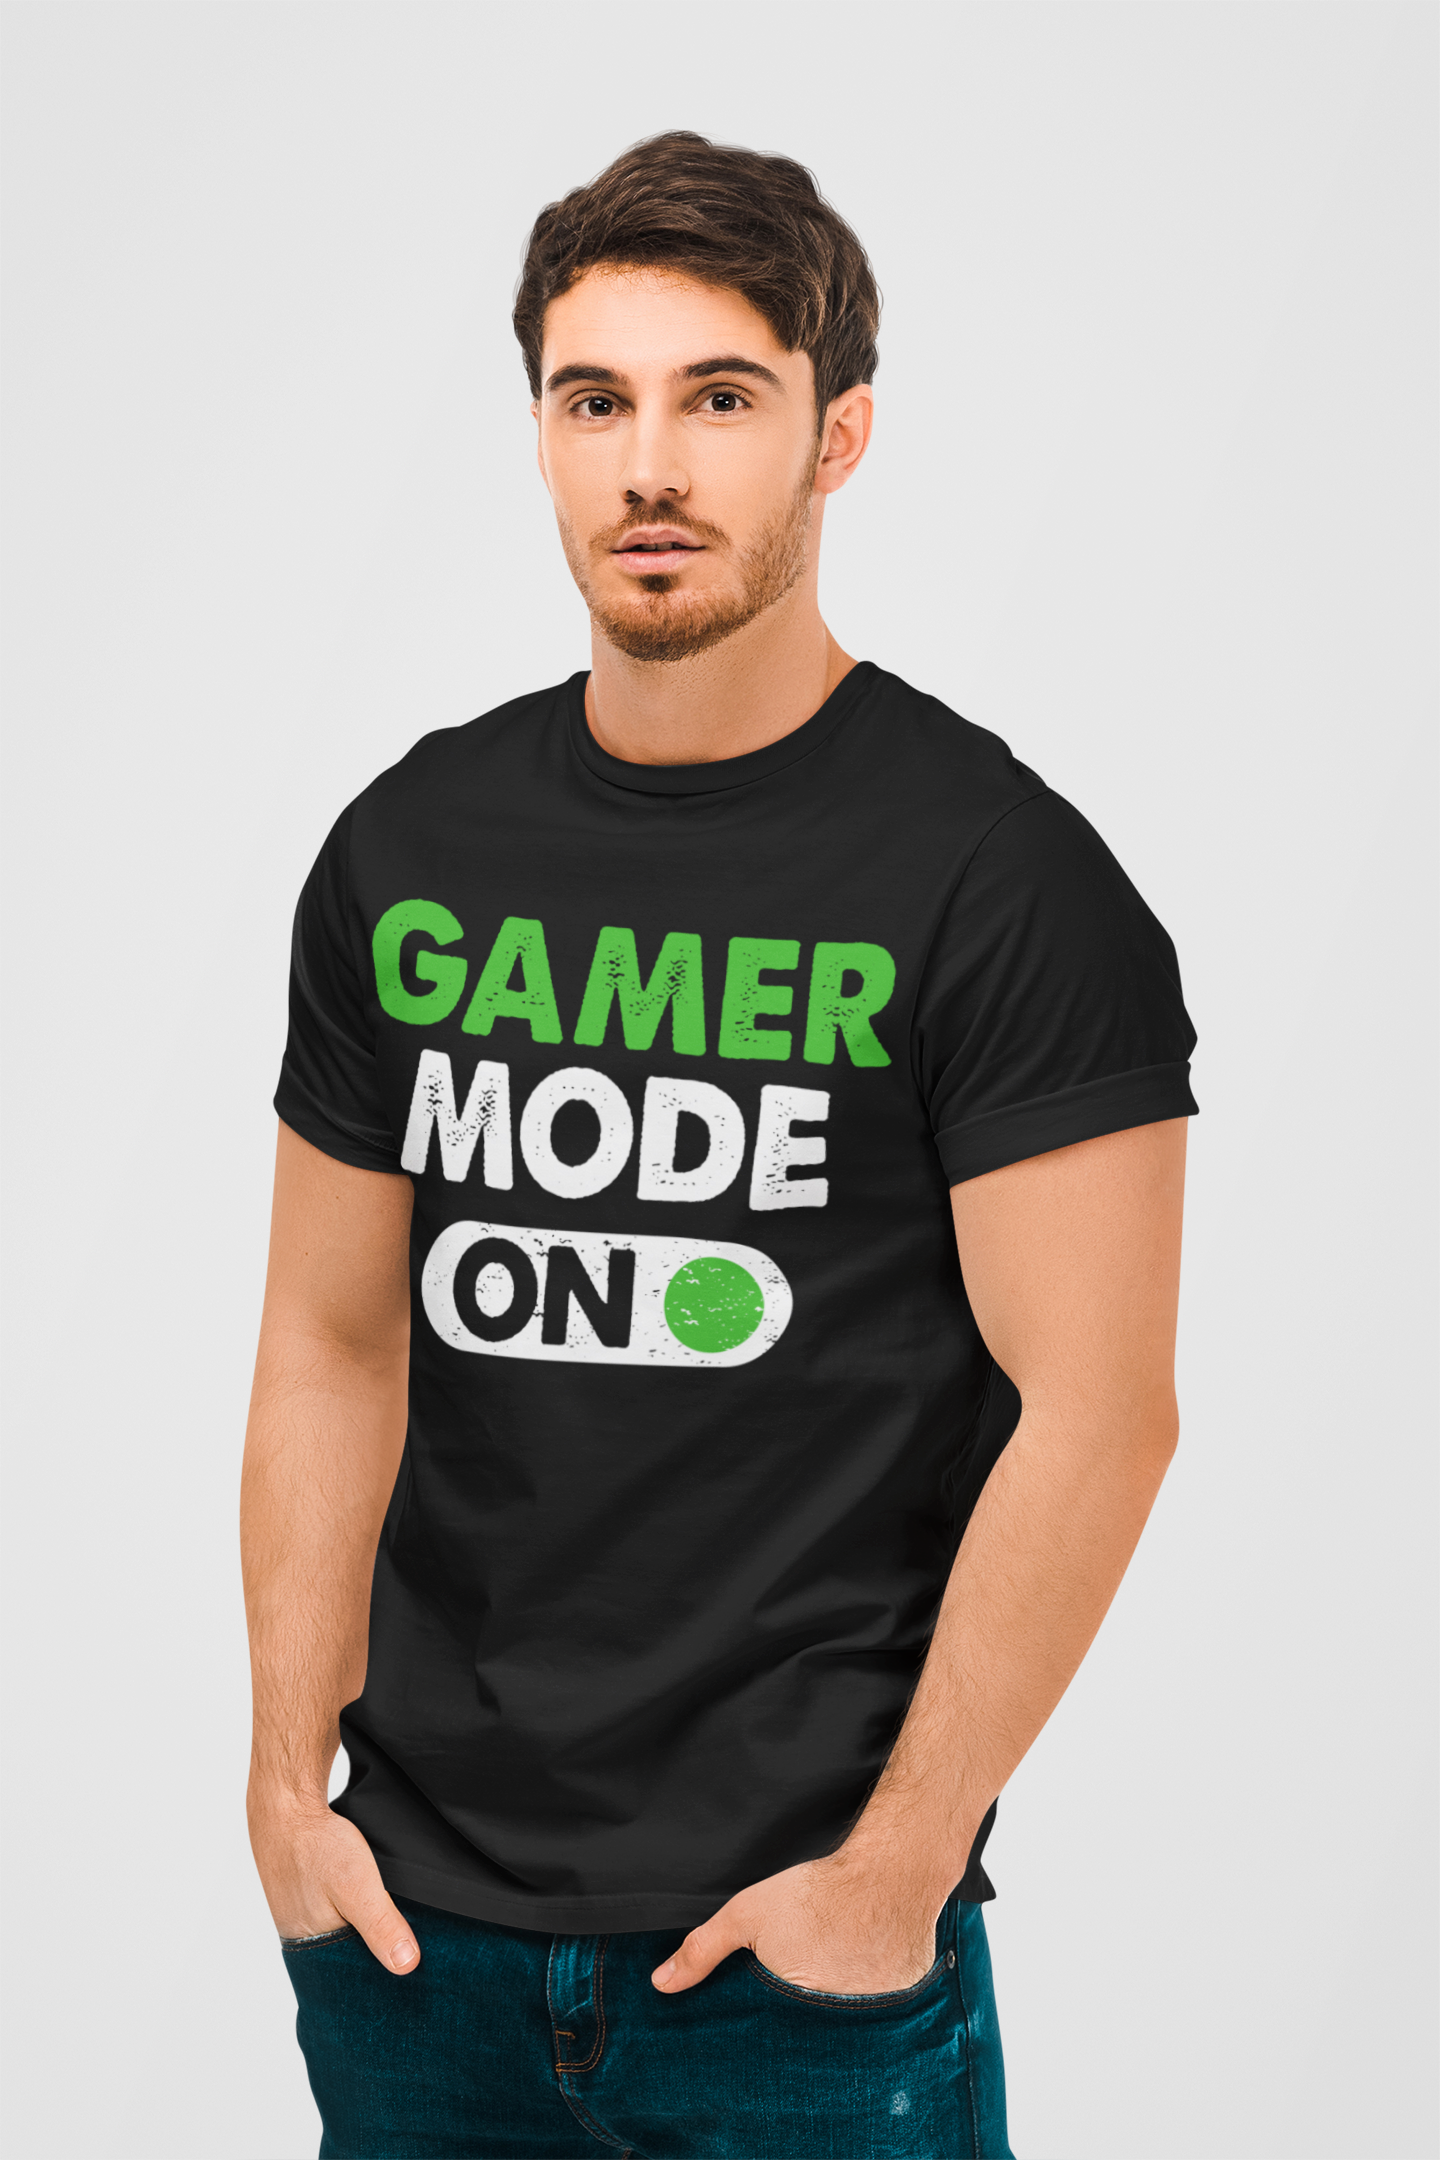 Gamer Mode On Black Round Neck T-Shirt for Men